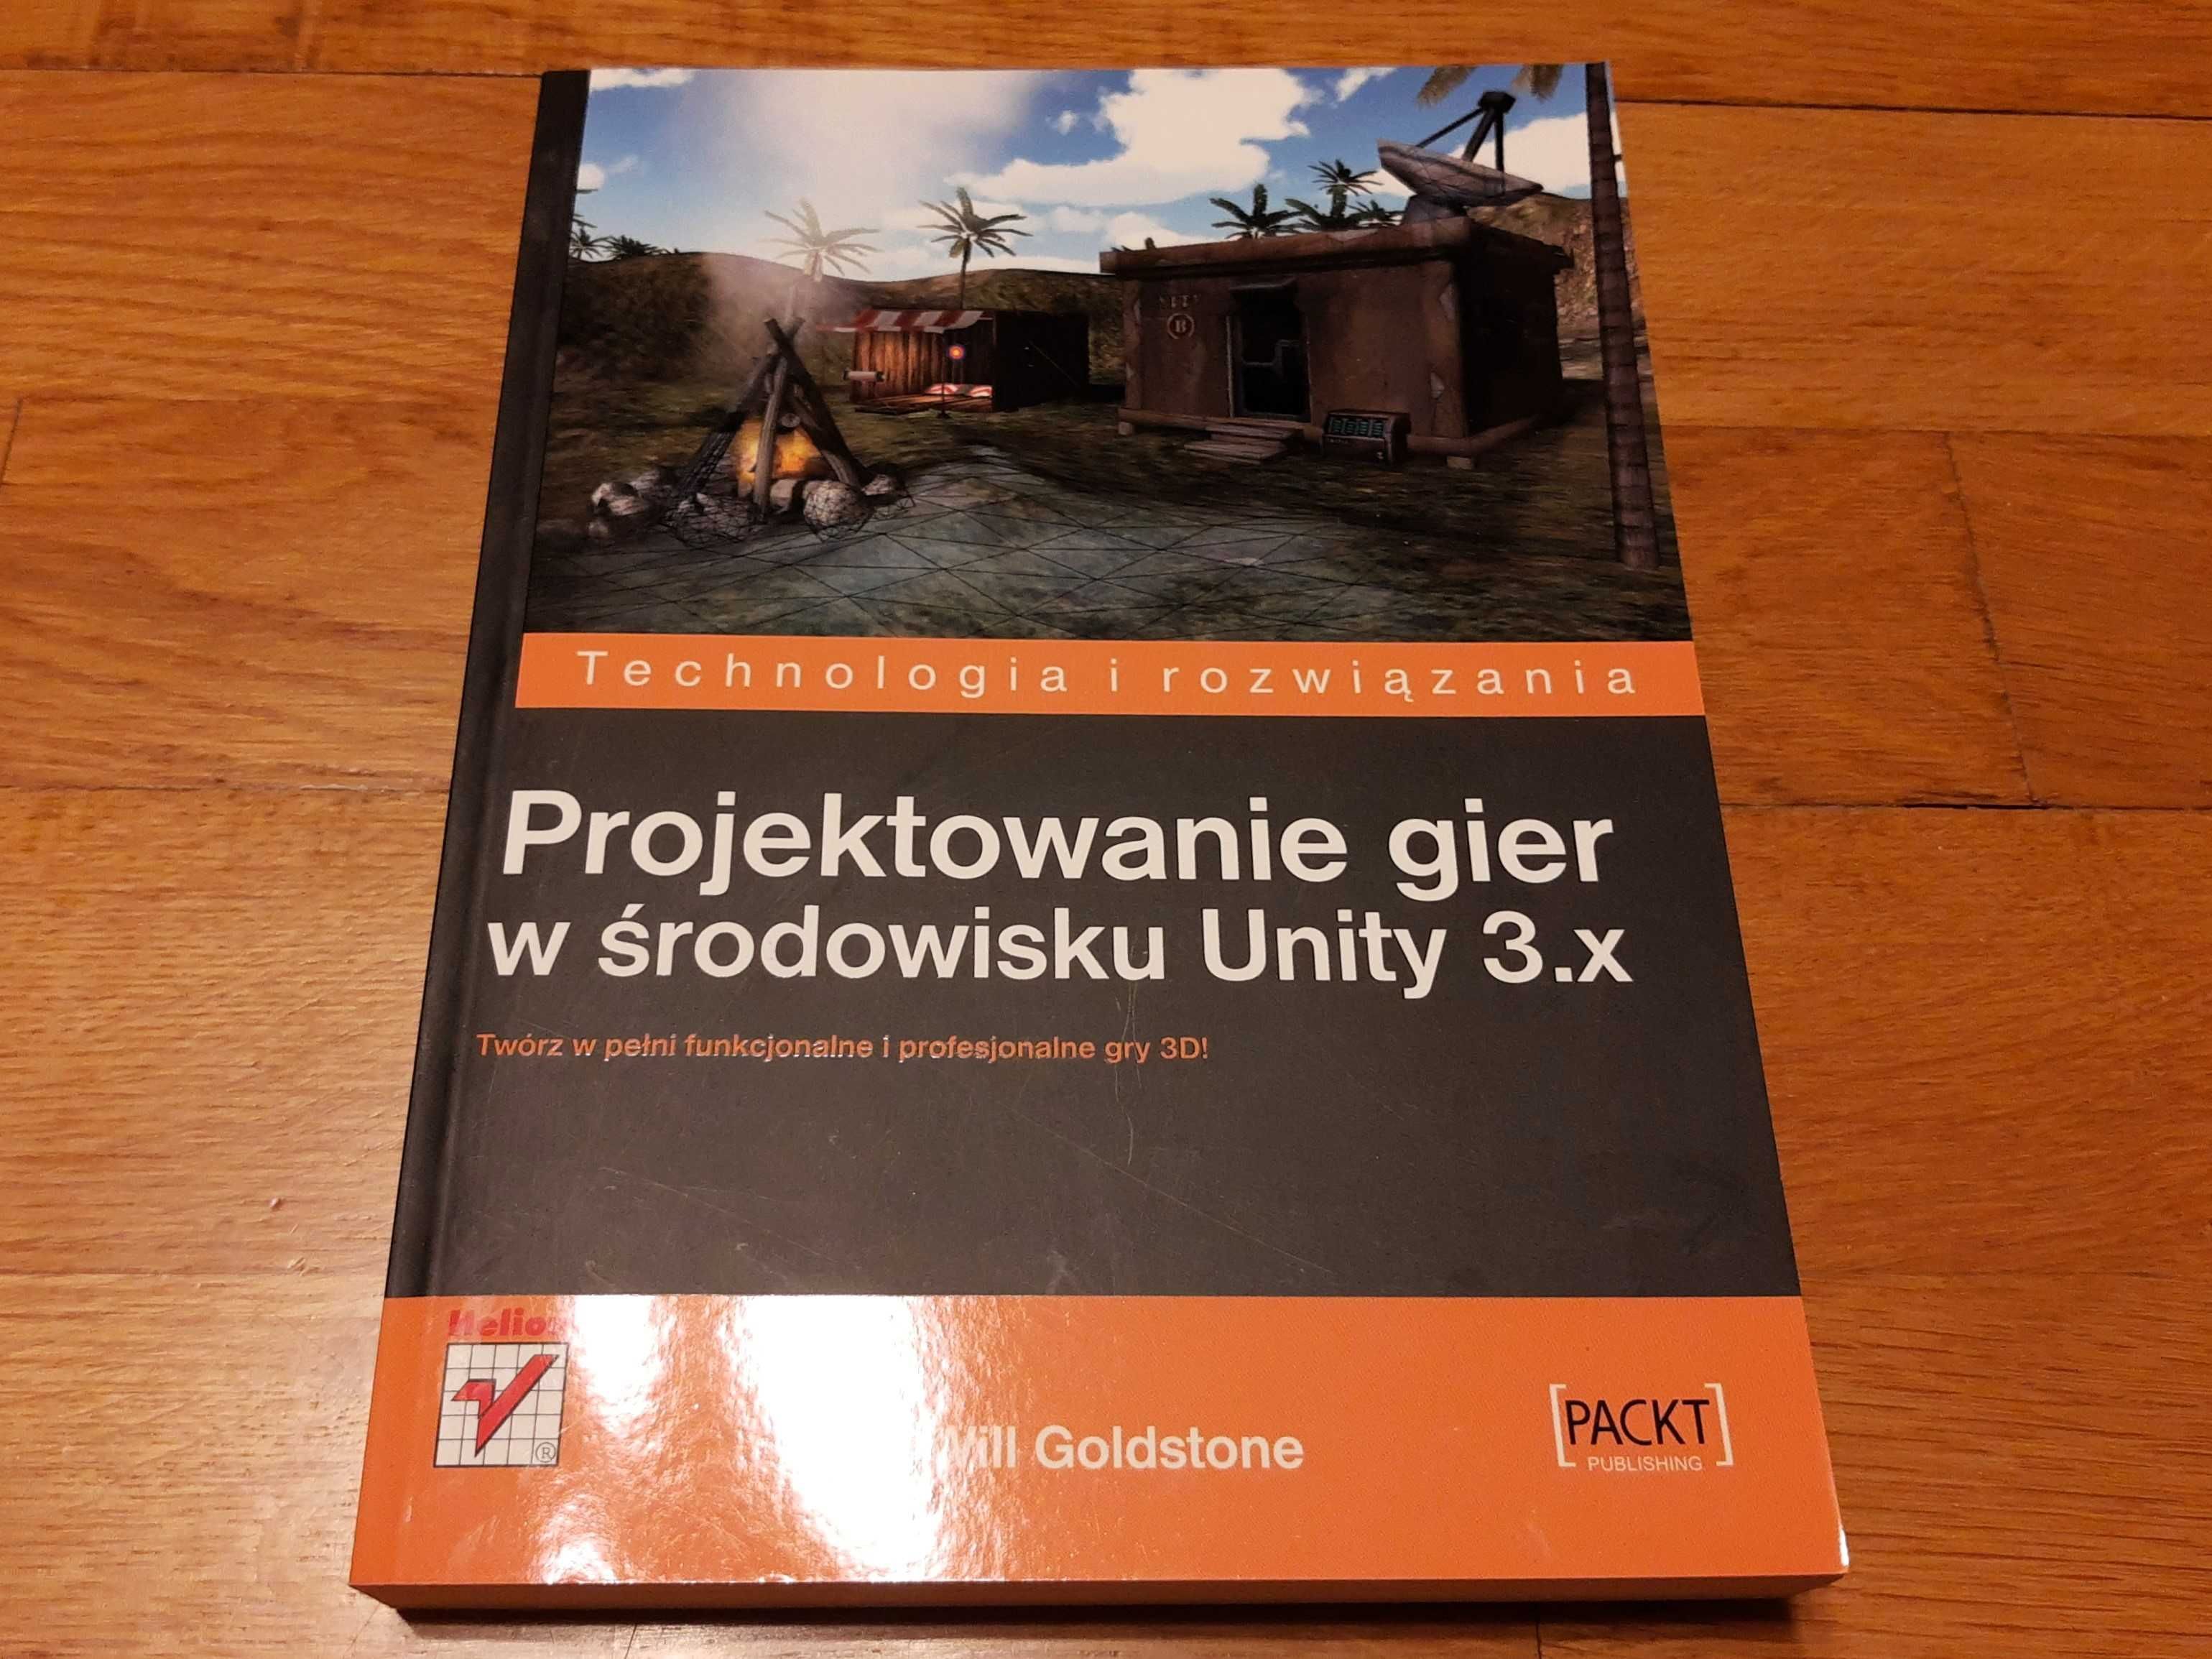 Projektowanie gier w środowisku Unity 3.x Will Goldstone